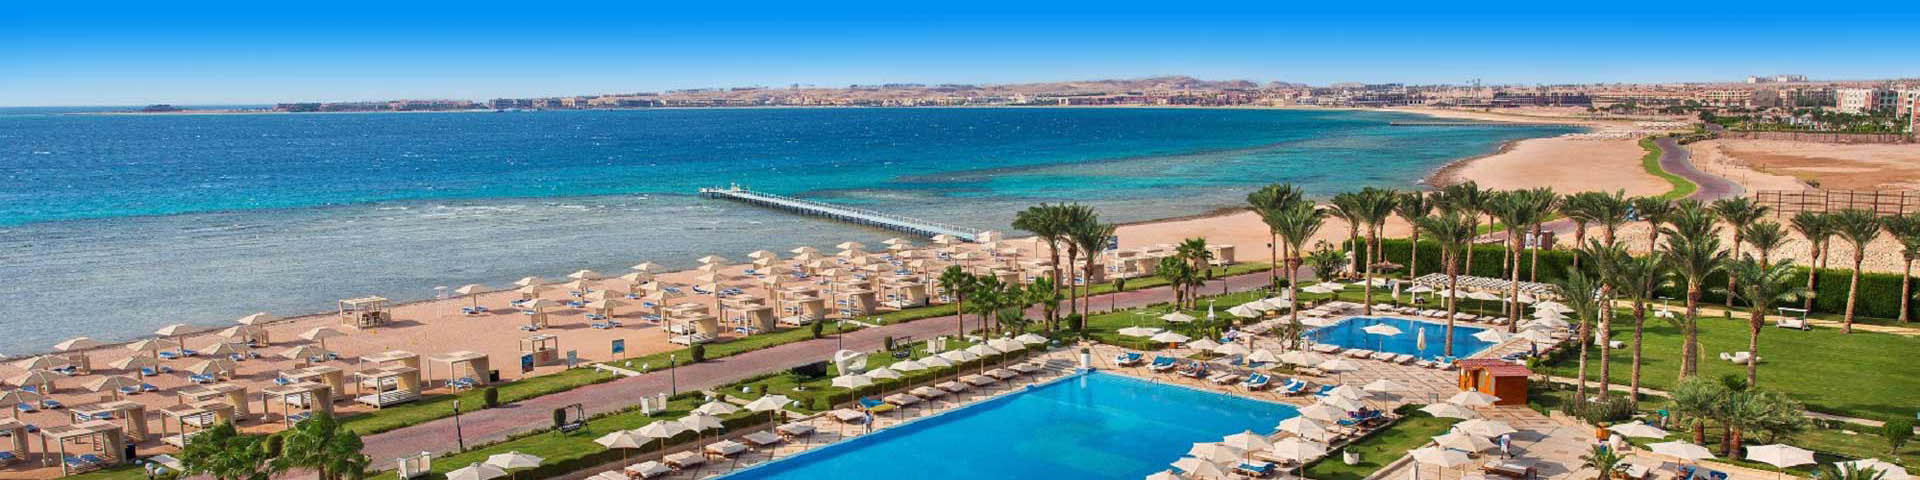 Uitzicht op het zwembad en het strand bij een hotel in Egypte